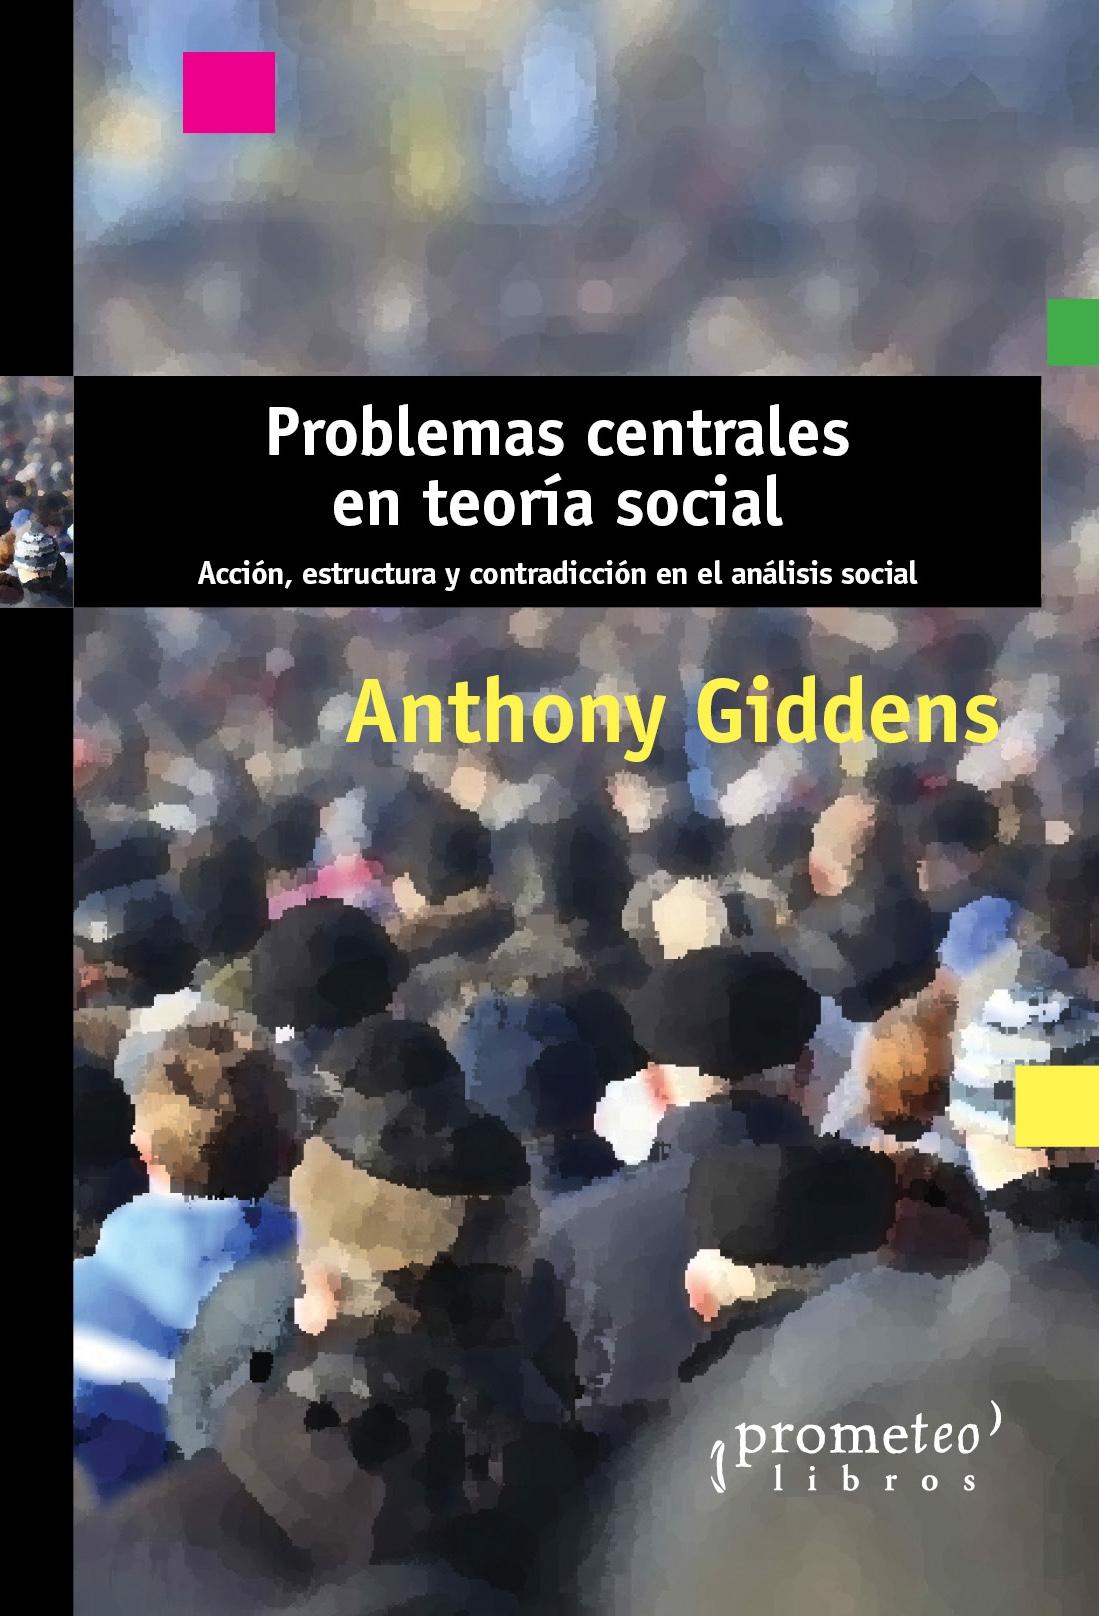 Problemas centrales en teoría social "Acción, estructura y contradicción en el análisis social"